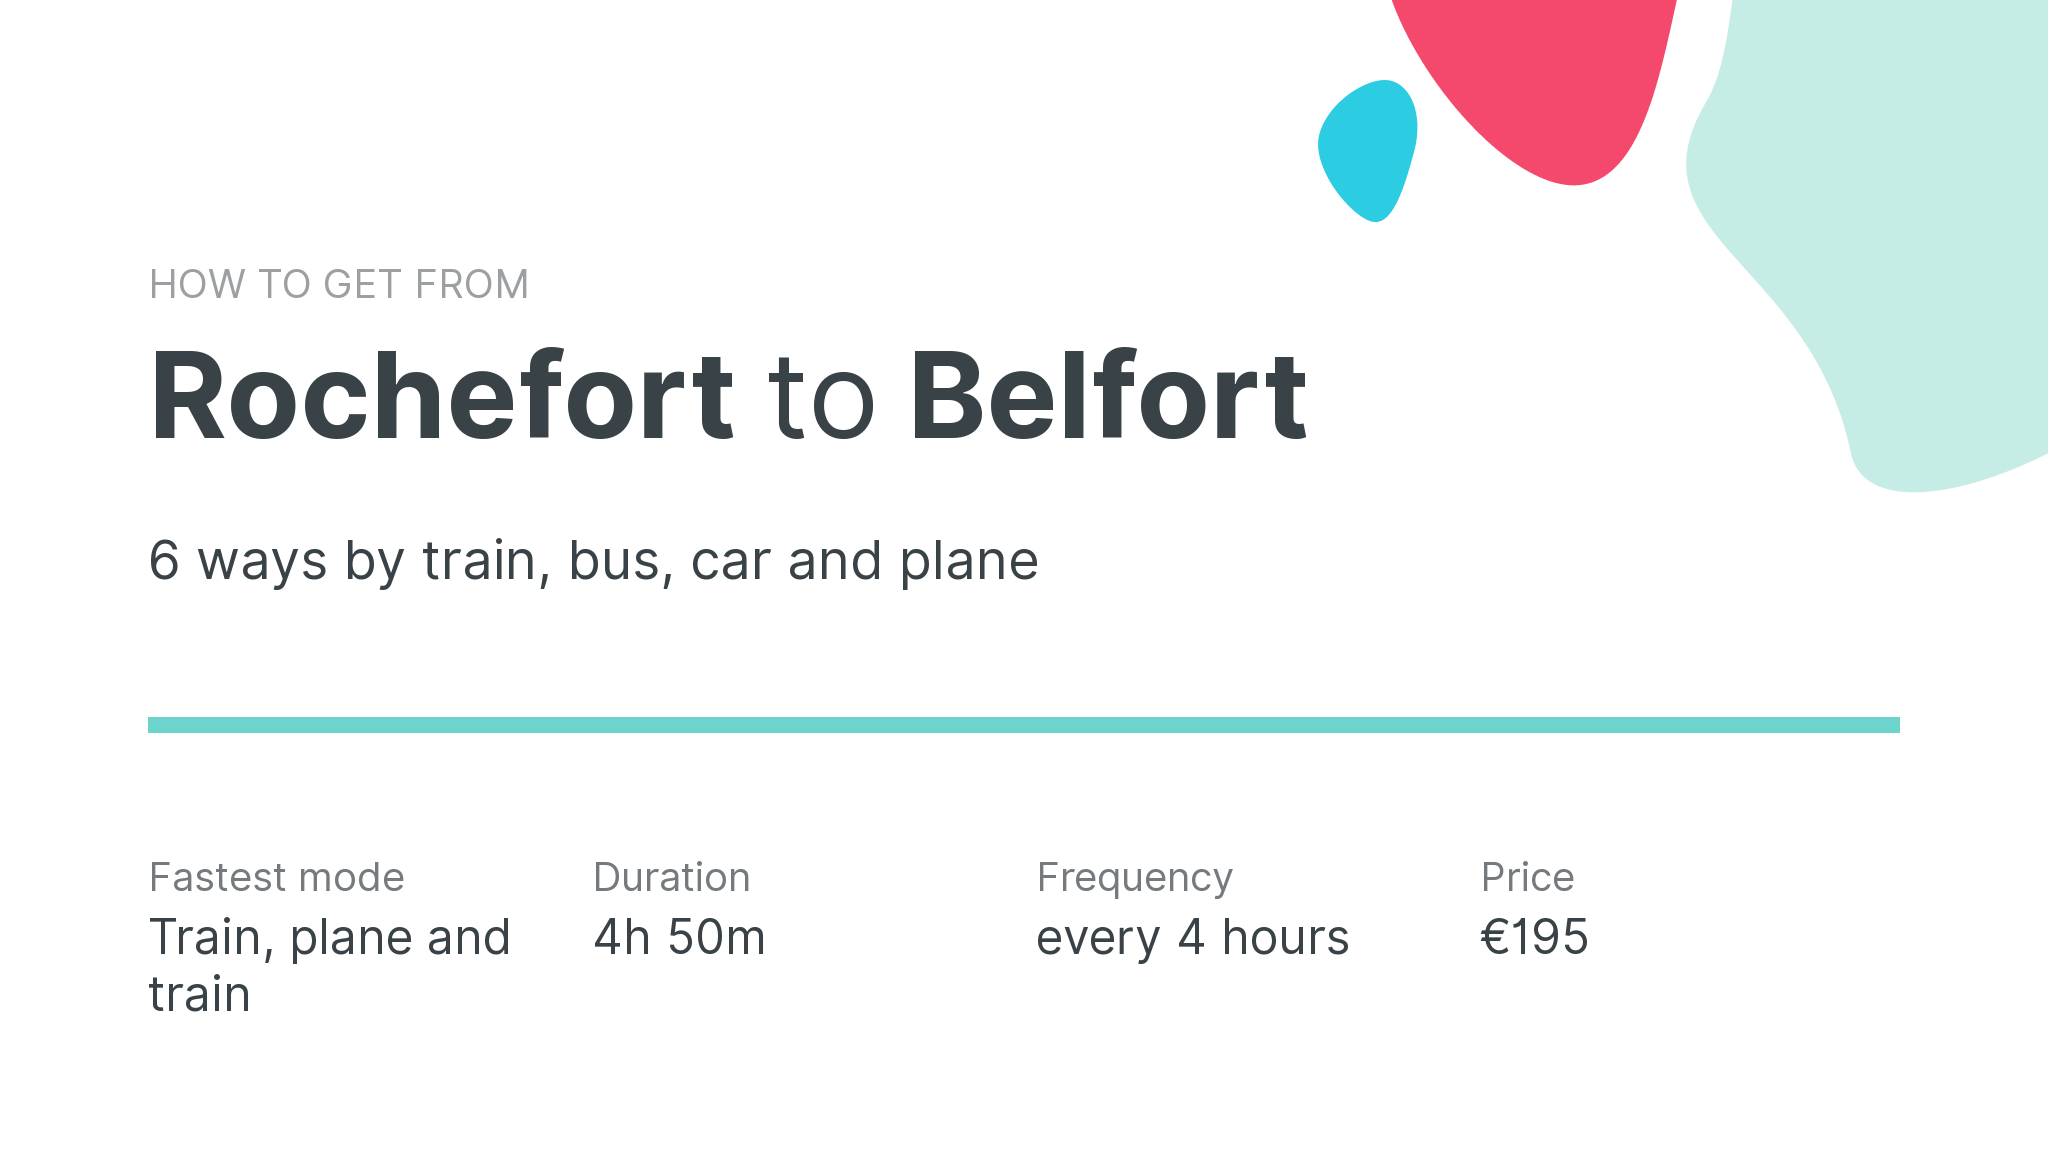 How do I get from Rochefort to Belfort